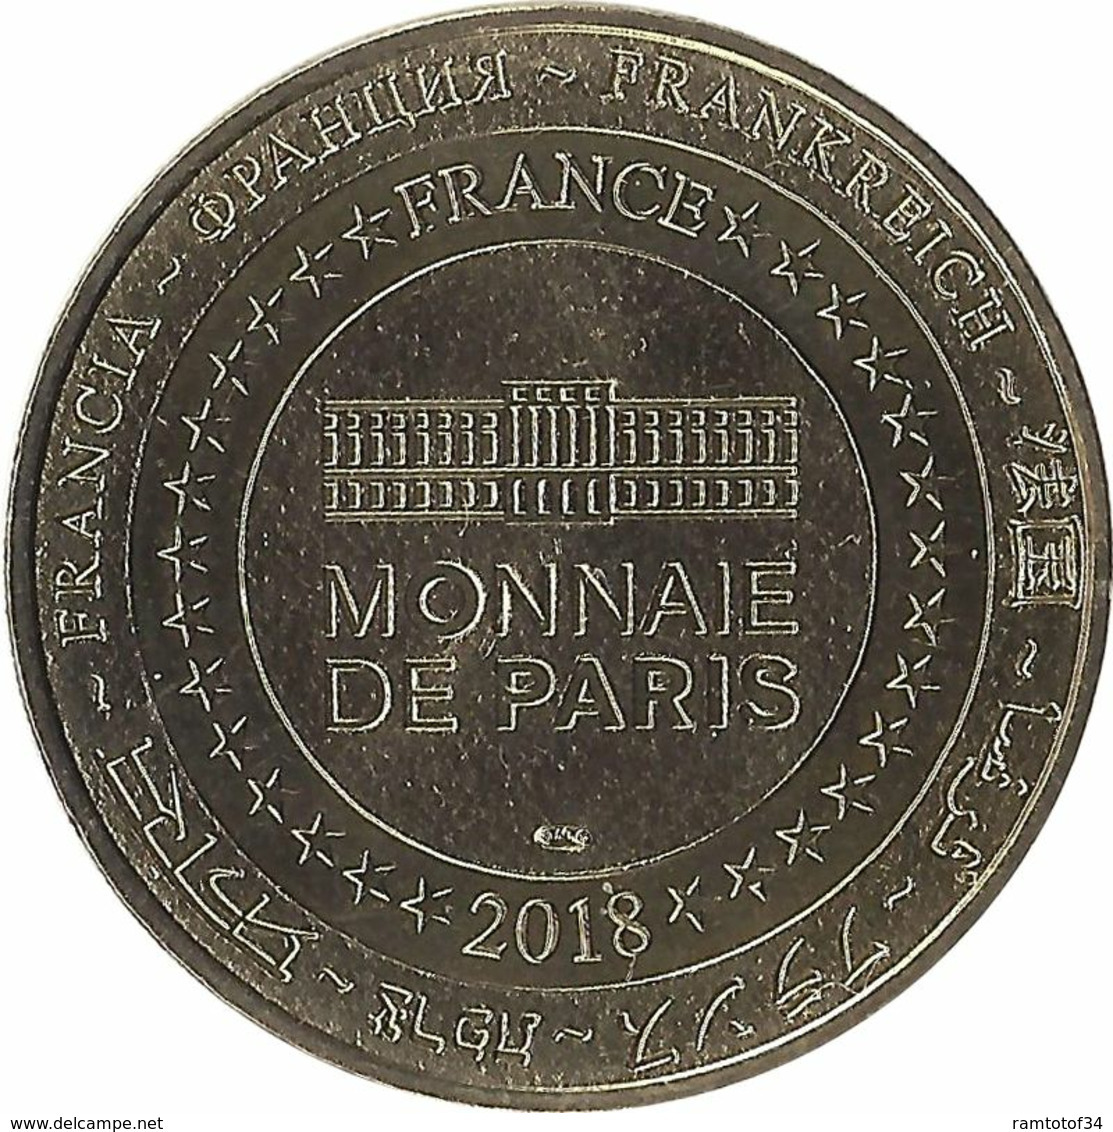 2018 MDP418 - SALINS-LES-BAINS 4 - La Maison Du Pardessus / MONNAIE DE PARIS 2018 - 2018